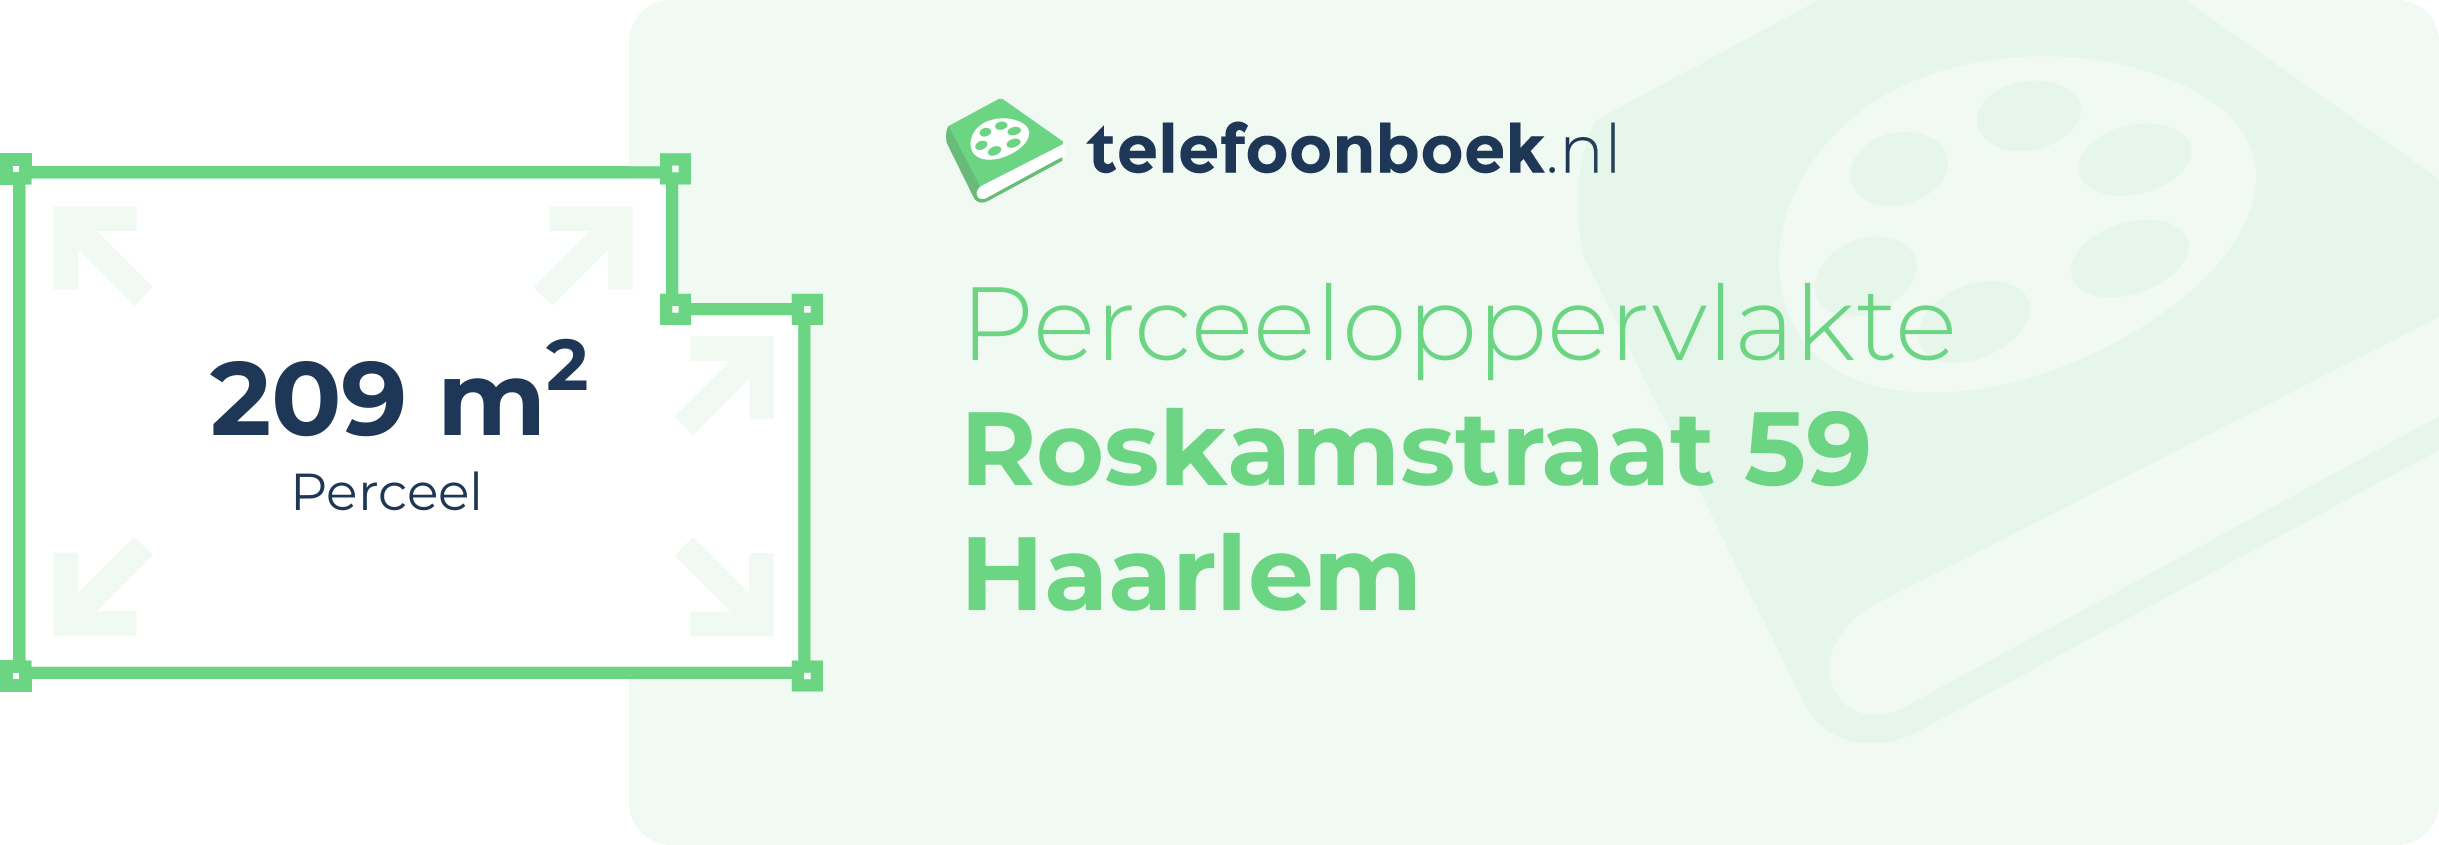 Perceeloppervlakte Roskamstraat 59 Haarlem